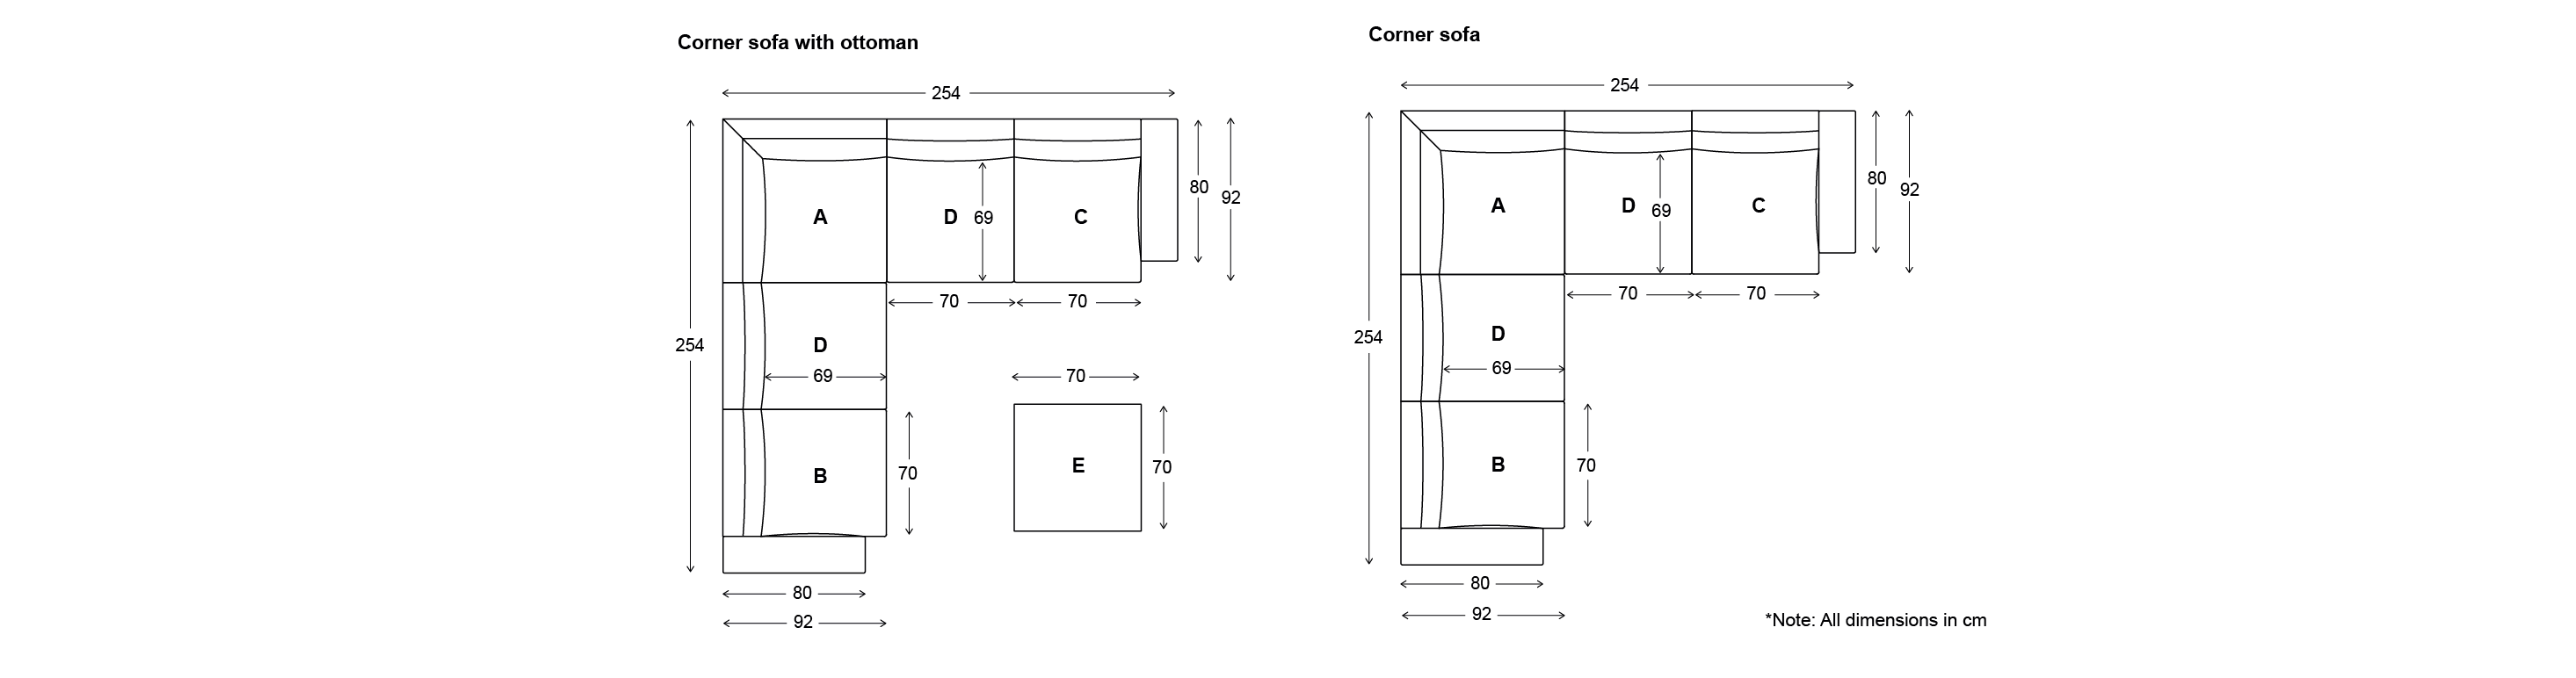 corner modular sofa